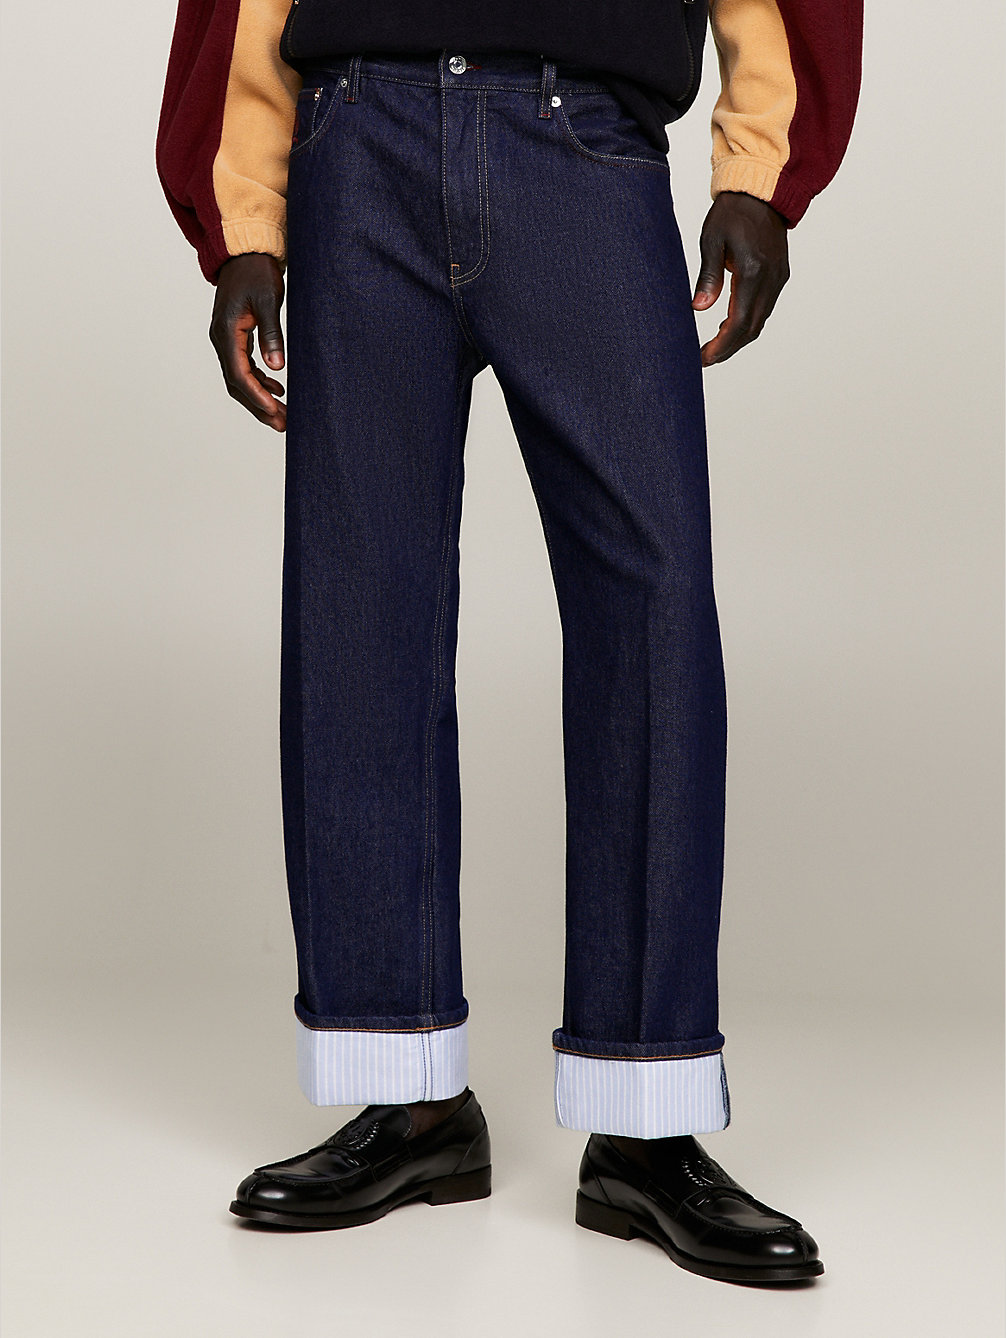 jeans regular fit con orli risvoltati e stemma purple da uomo tommy hilfiger